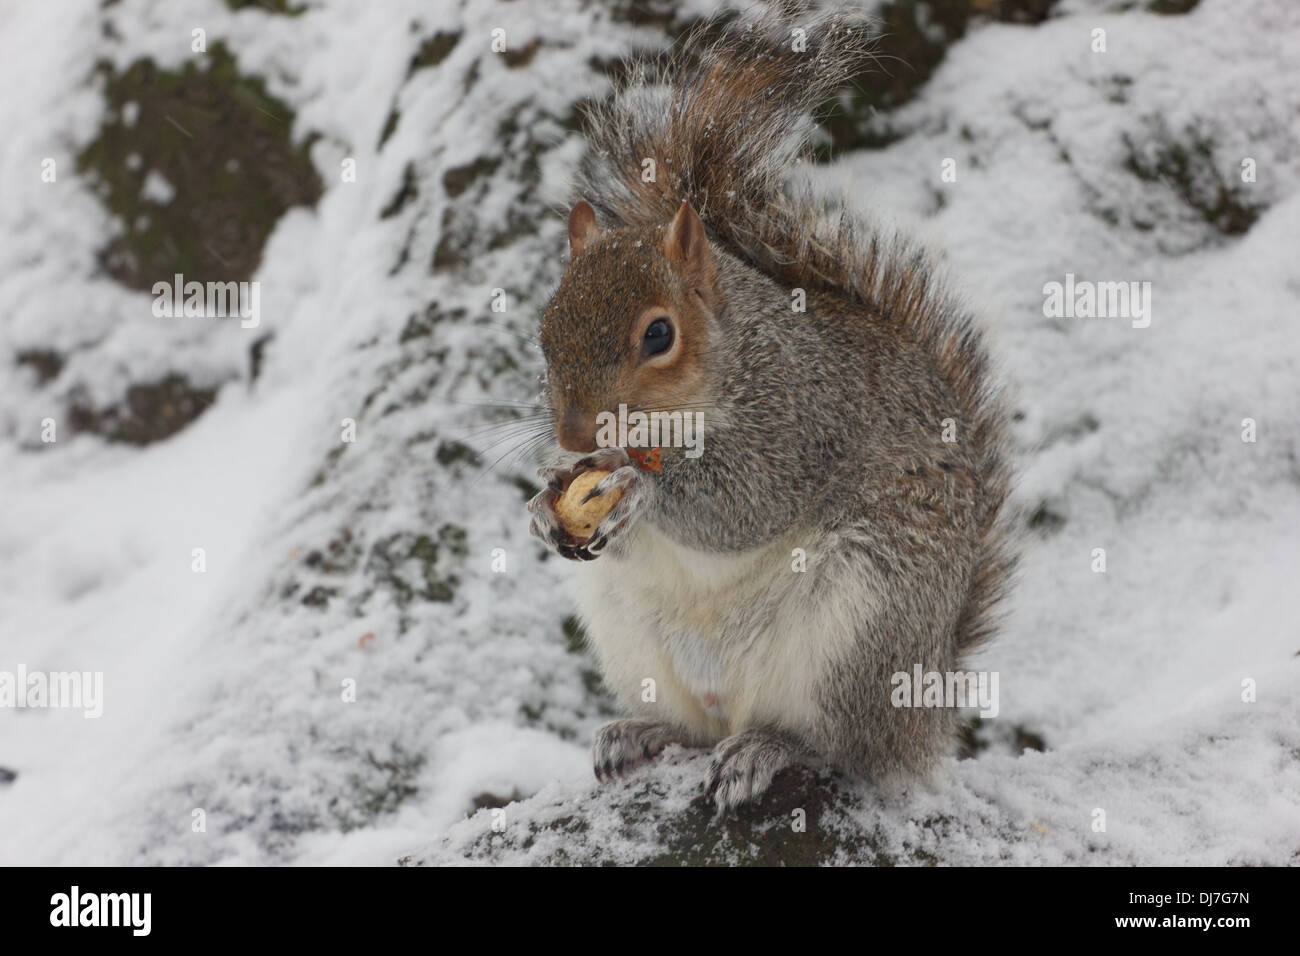 Un écureuil est assis dans la neige de manger une noix, sa fourrure gonflée contre le froid Banque D'Images